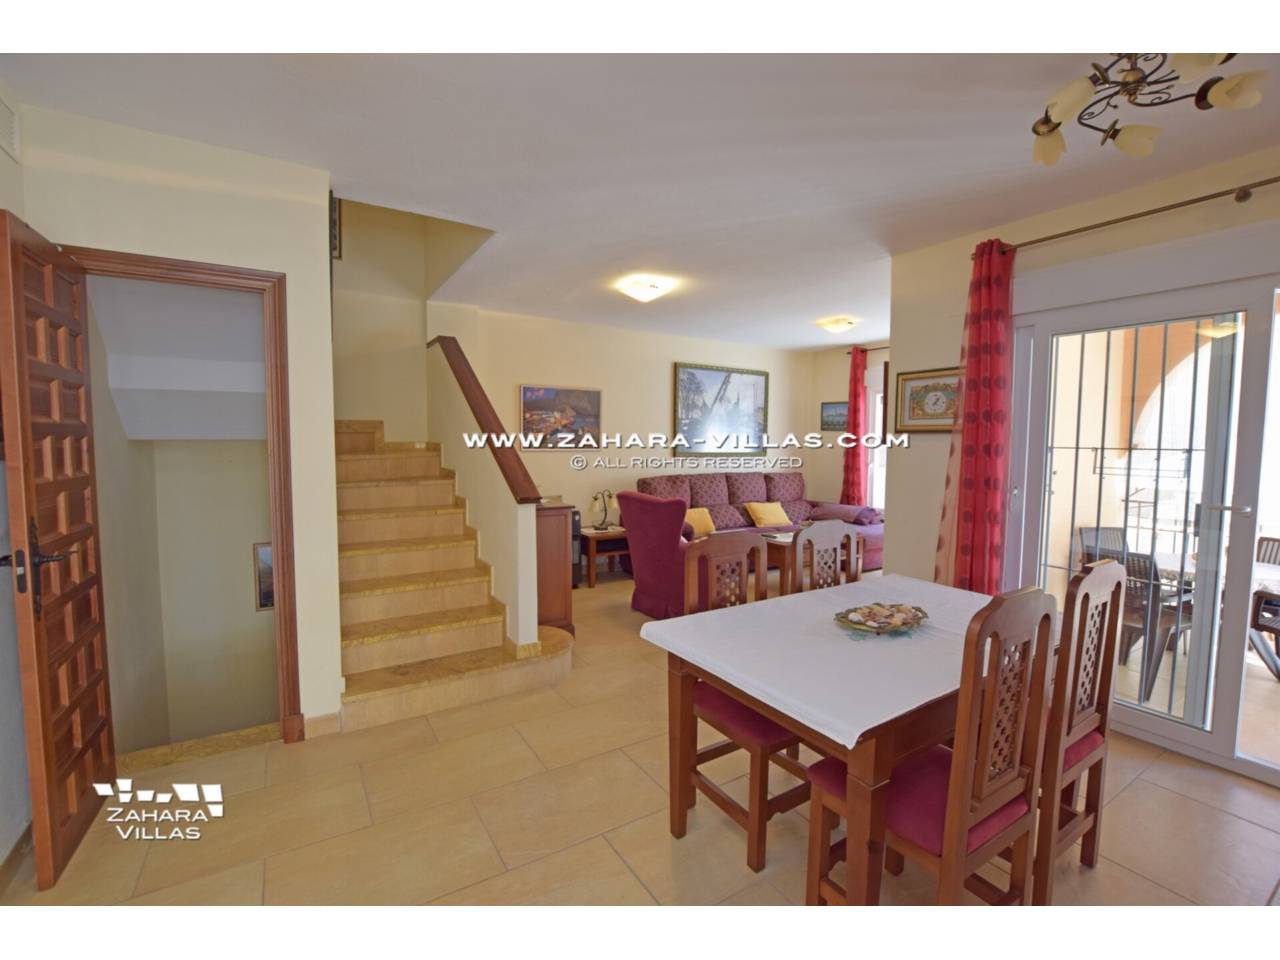 Imagen 35 de Semi-detached house for sale in Zahara de los Atunes, Costa de la Luz